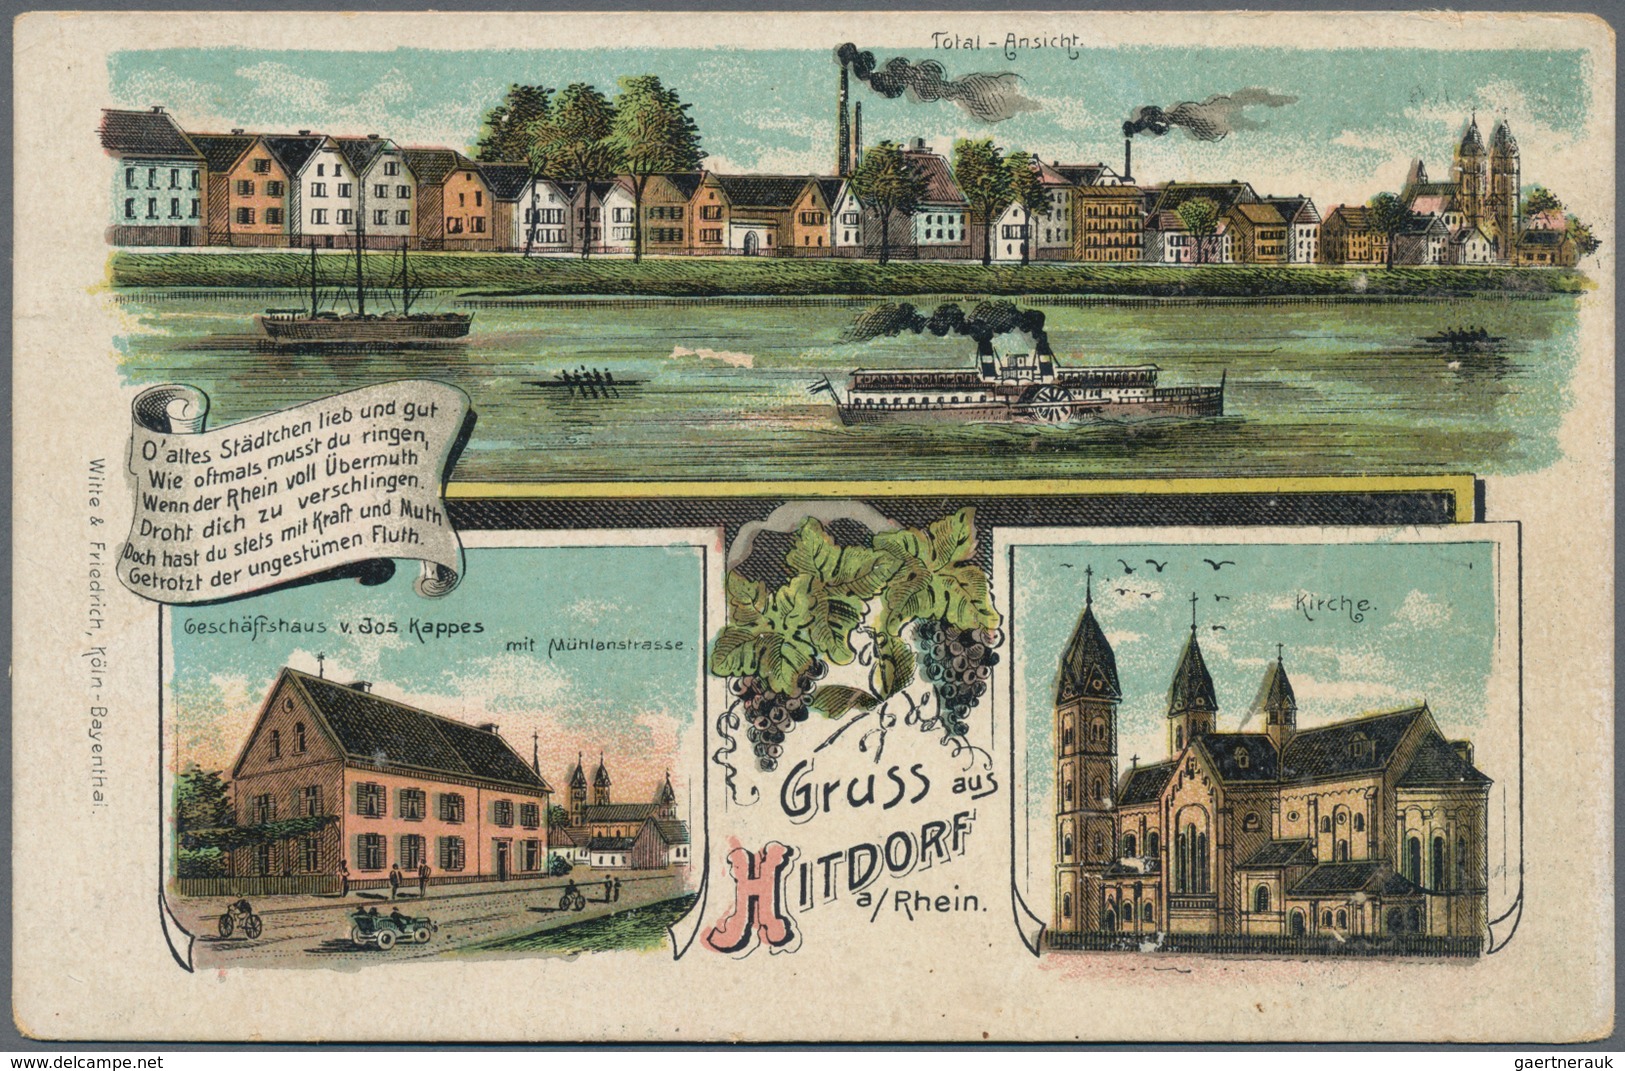 Ansichtskarten: Deutschland: 1896/1940 (ca.), Partie von ca. 170 Topographie-Ansichtskarten, dabei a